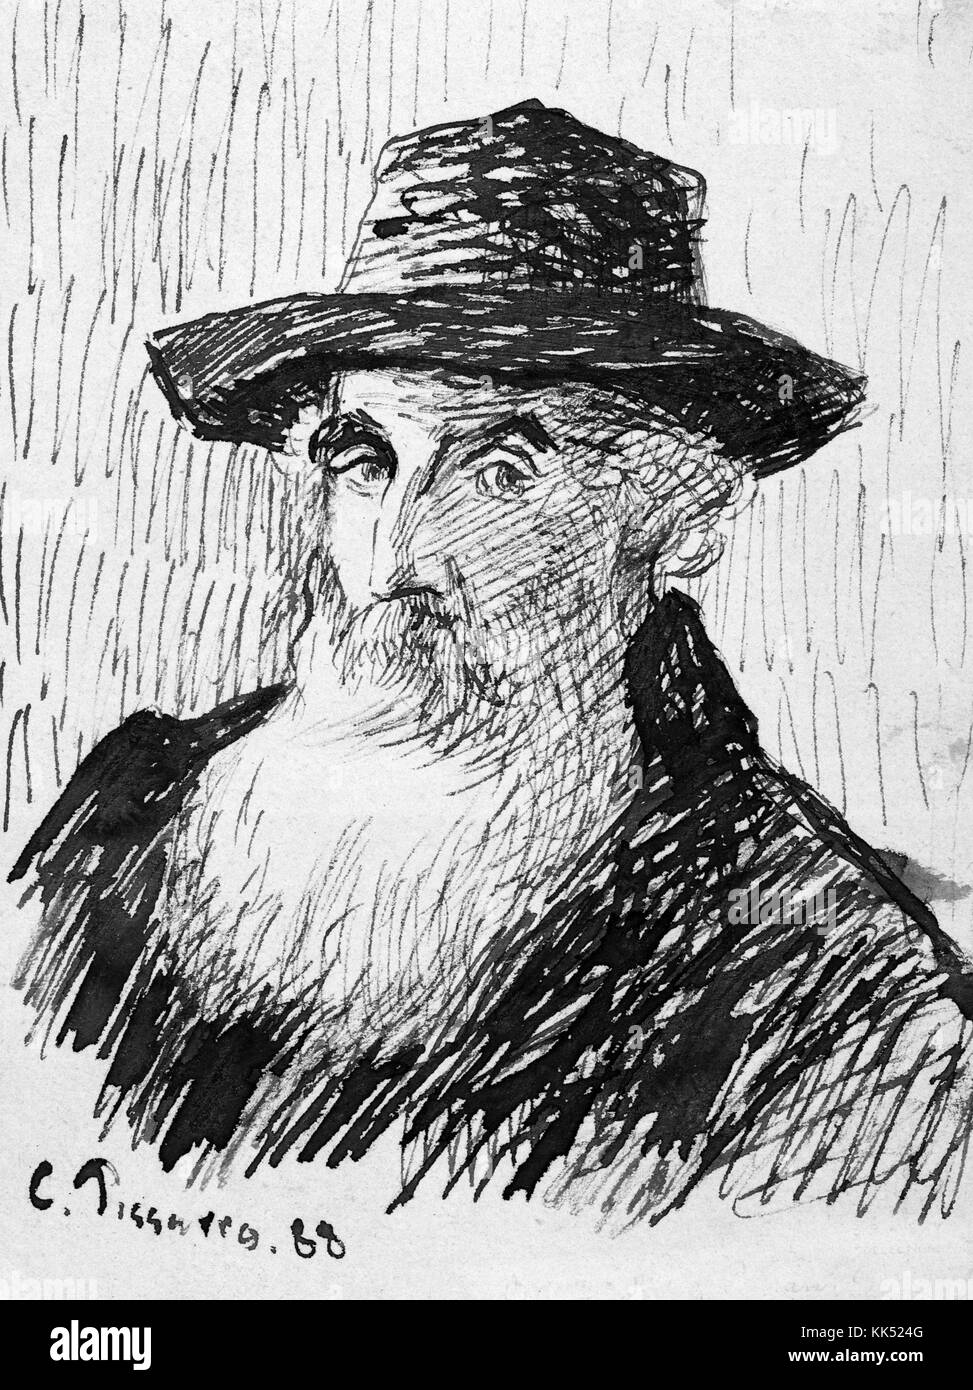 Tinte gezeichnet self portrait von Camille Pissarro, dänisch-französischen Impressionisten und neo-impressionistischen Maler, einen Hut tragen, langen, weißen Bart, 1888. Von der New York Public Library. Stockfoto